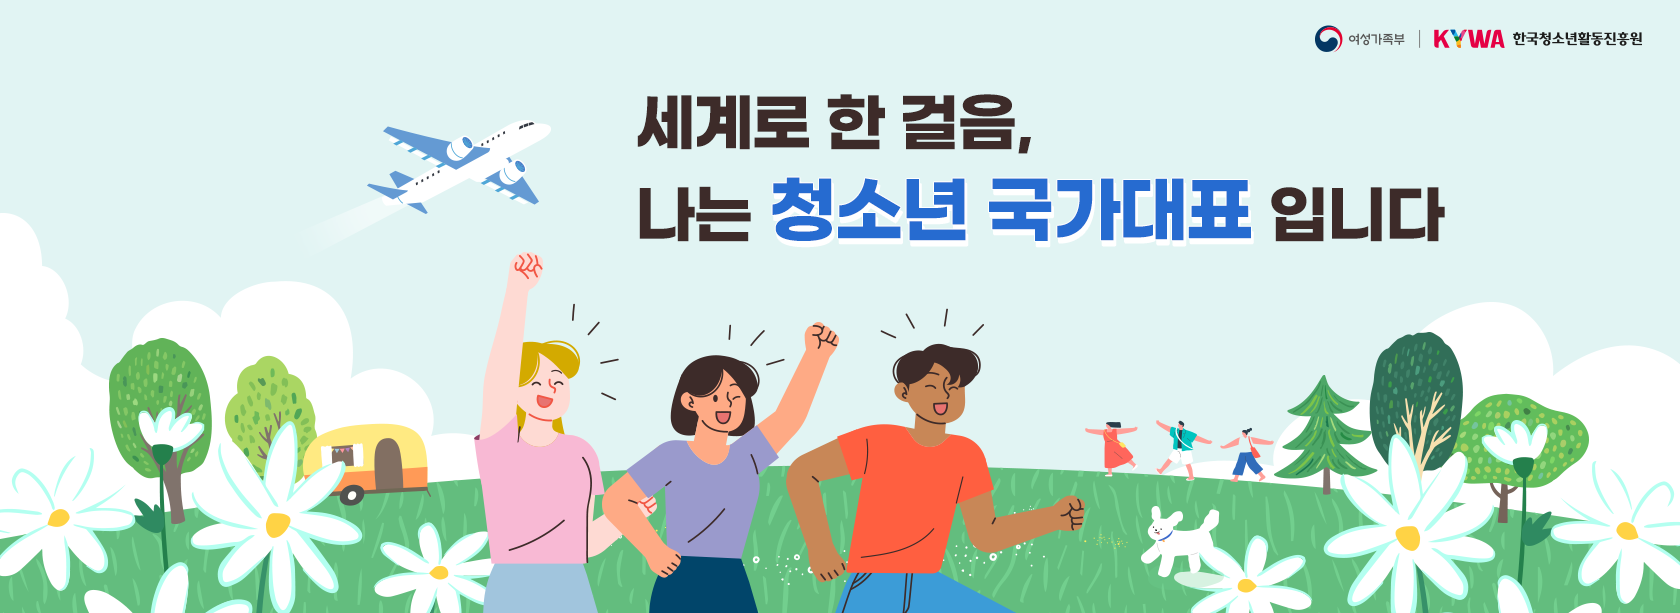 여성가족부, 한국청소년활동진흥원 세계로 한 걸음, 나는 청소년 국가대표 입니다.